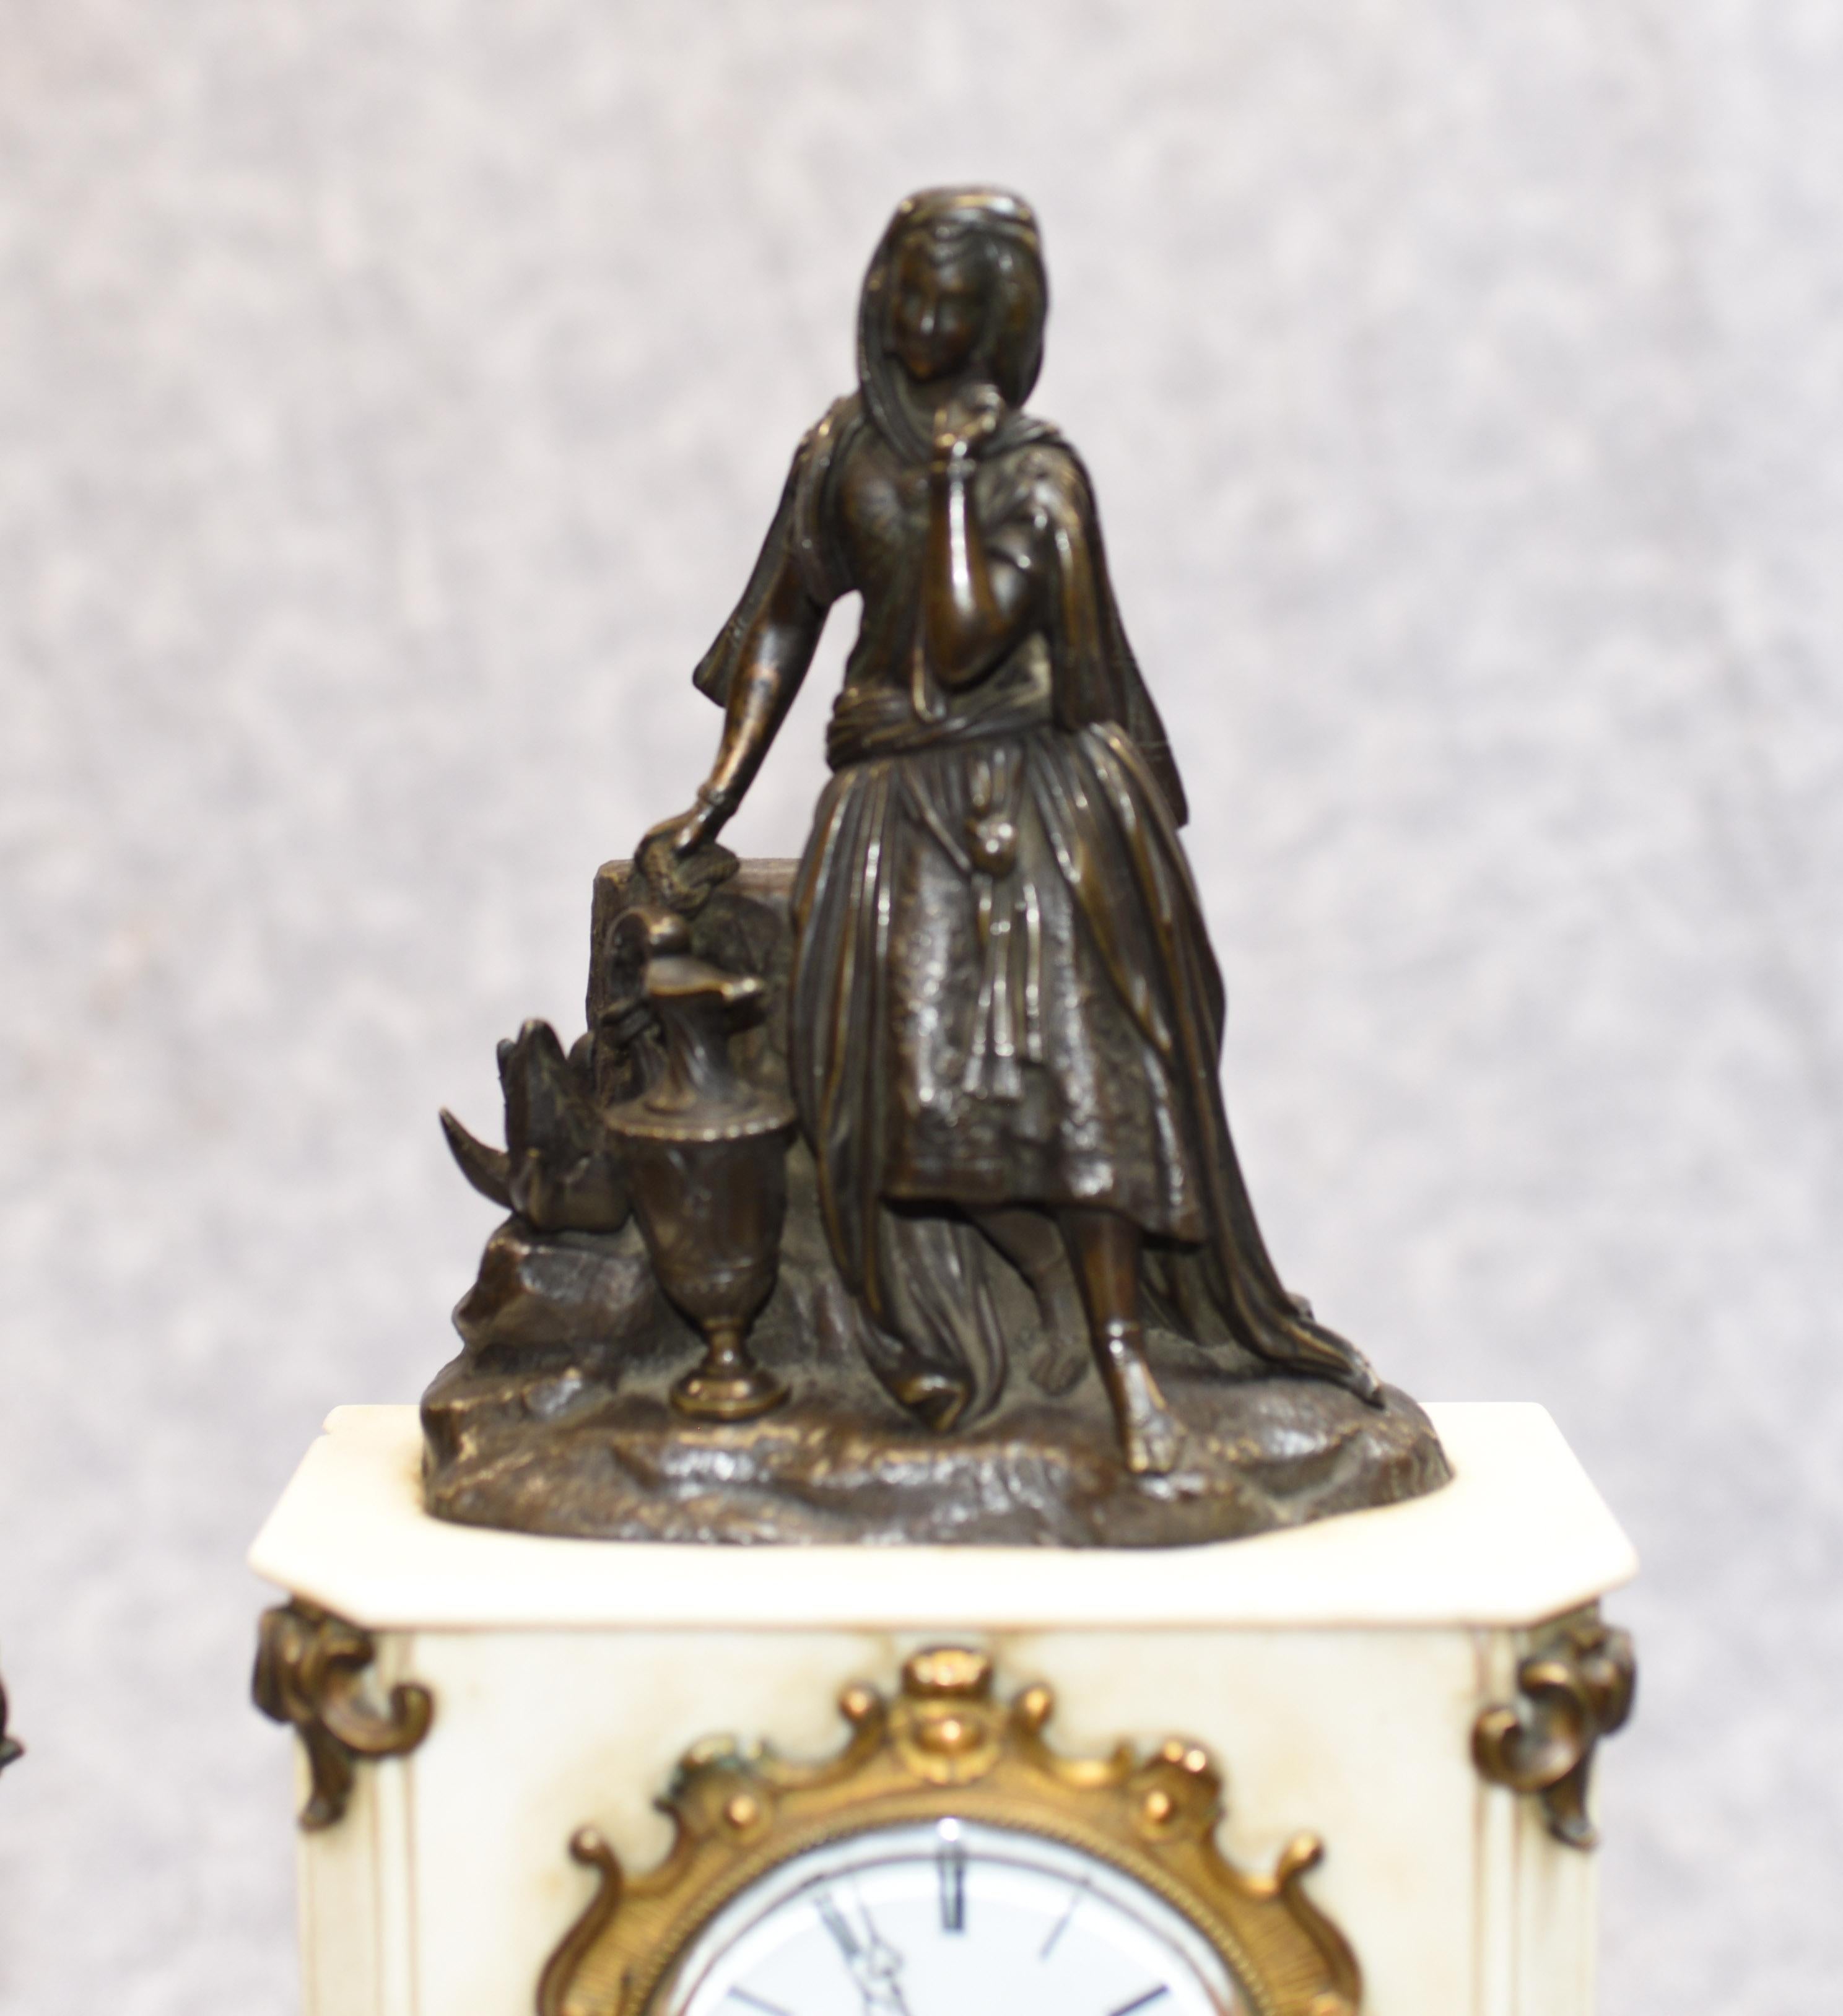 - Magnifique ensemble d'horloges anciennes Empire français
- L'horloge de cheminée est flanquée de deux urnes en bronze sur des piédestaux.
- L'horloge est surmontée d'une figurine de jeune fille en bronze.
- Nous datons cet ensemble d'horloges